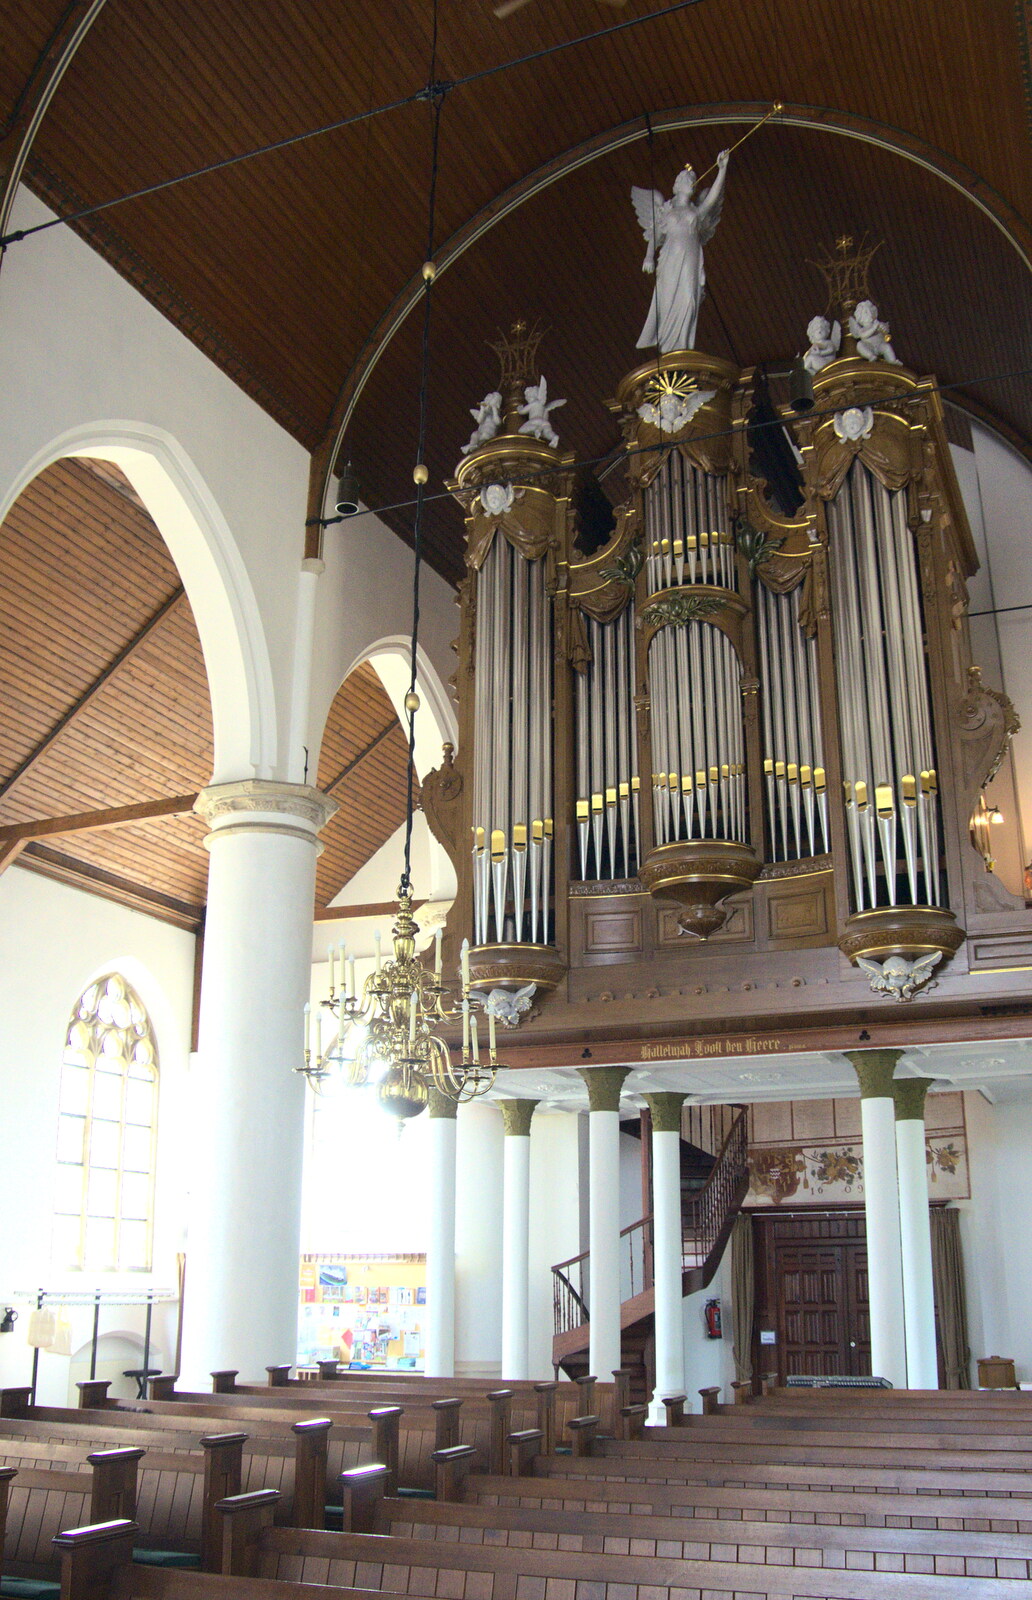 The organ of the Hervormde Kerk from A Postcard From Asperen, Gelderland, Netherlands - 9th June 2018